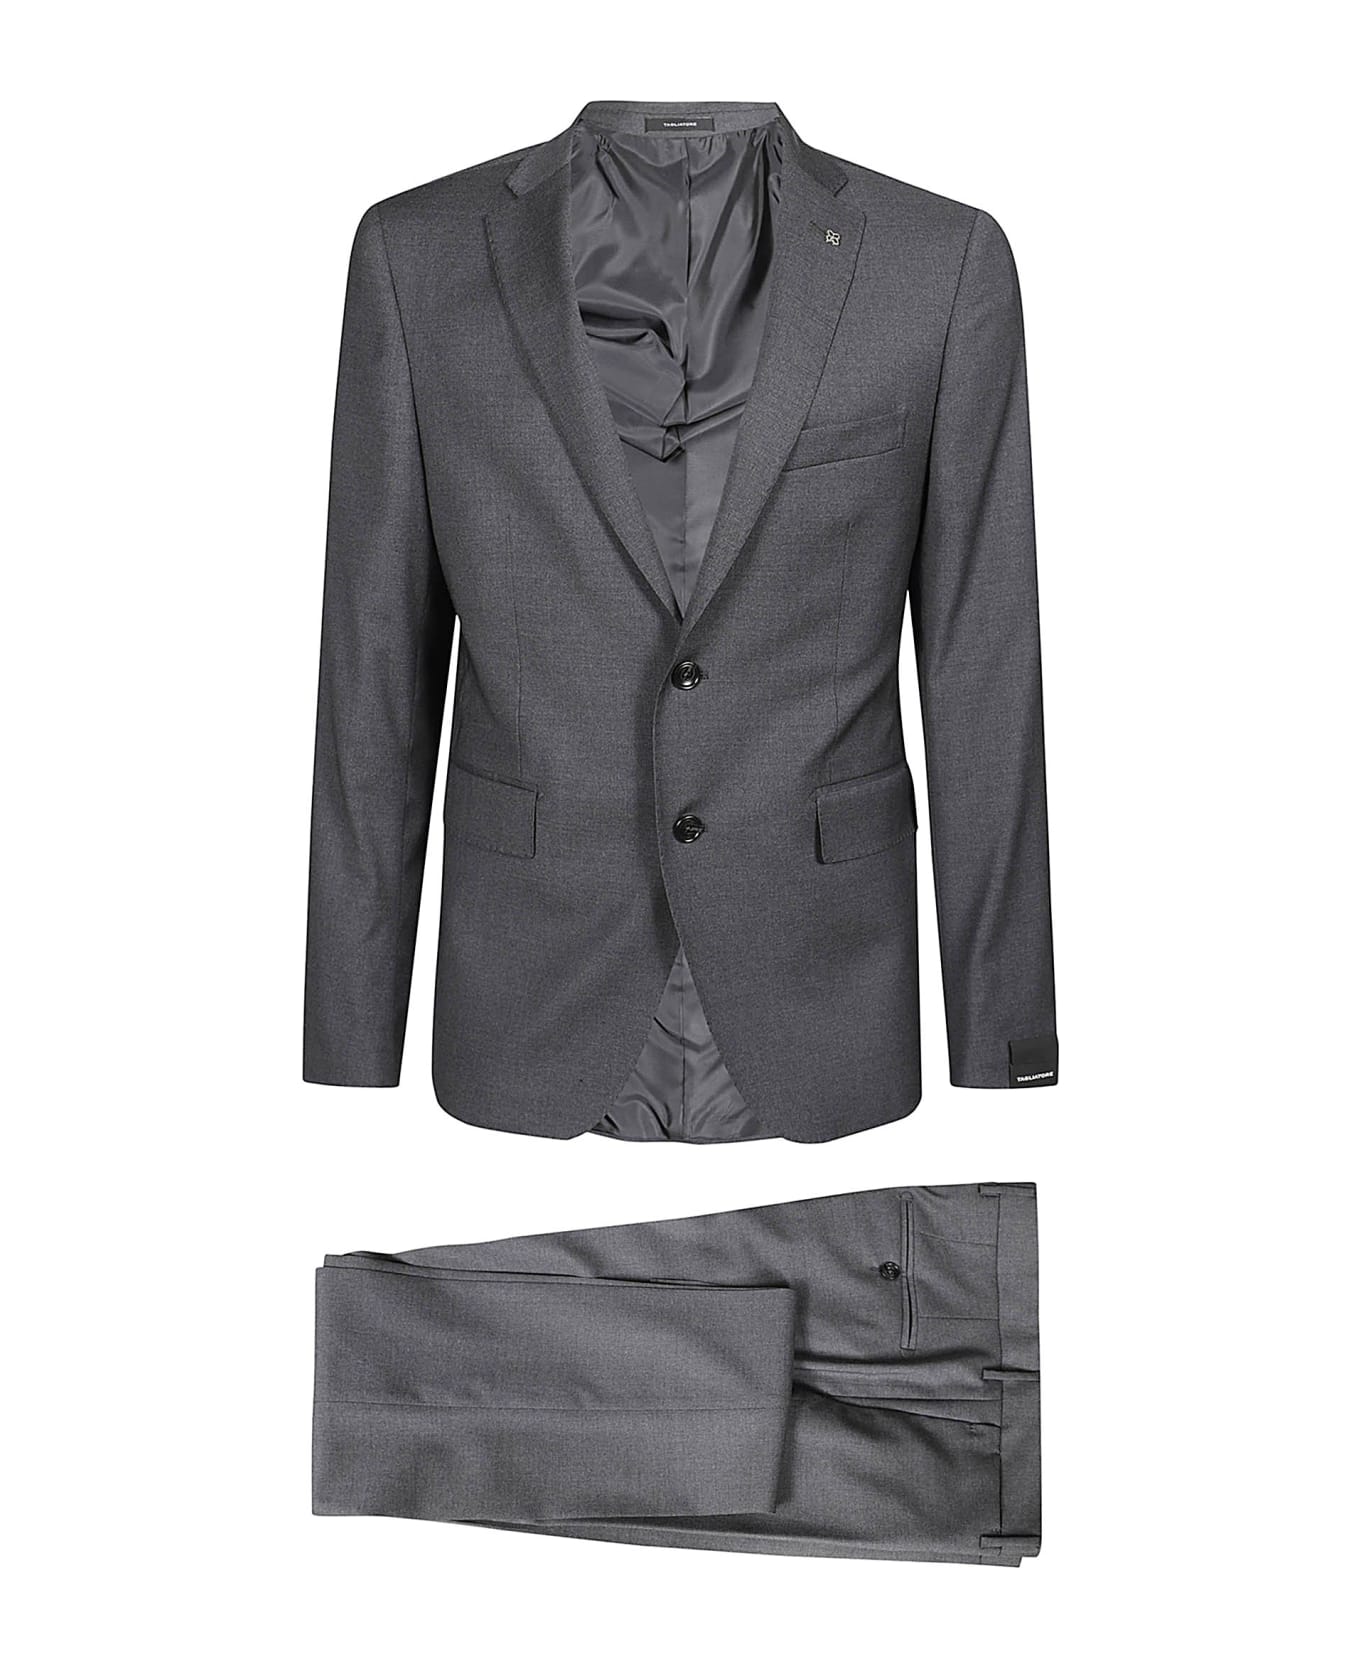 Tagliatore Suit - Antracite スーツ